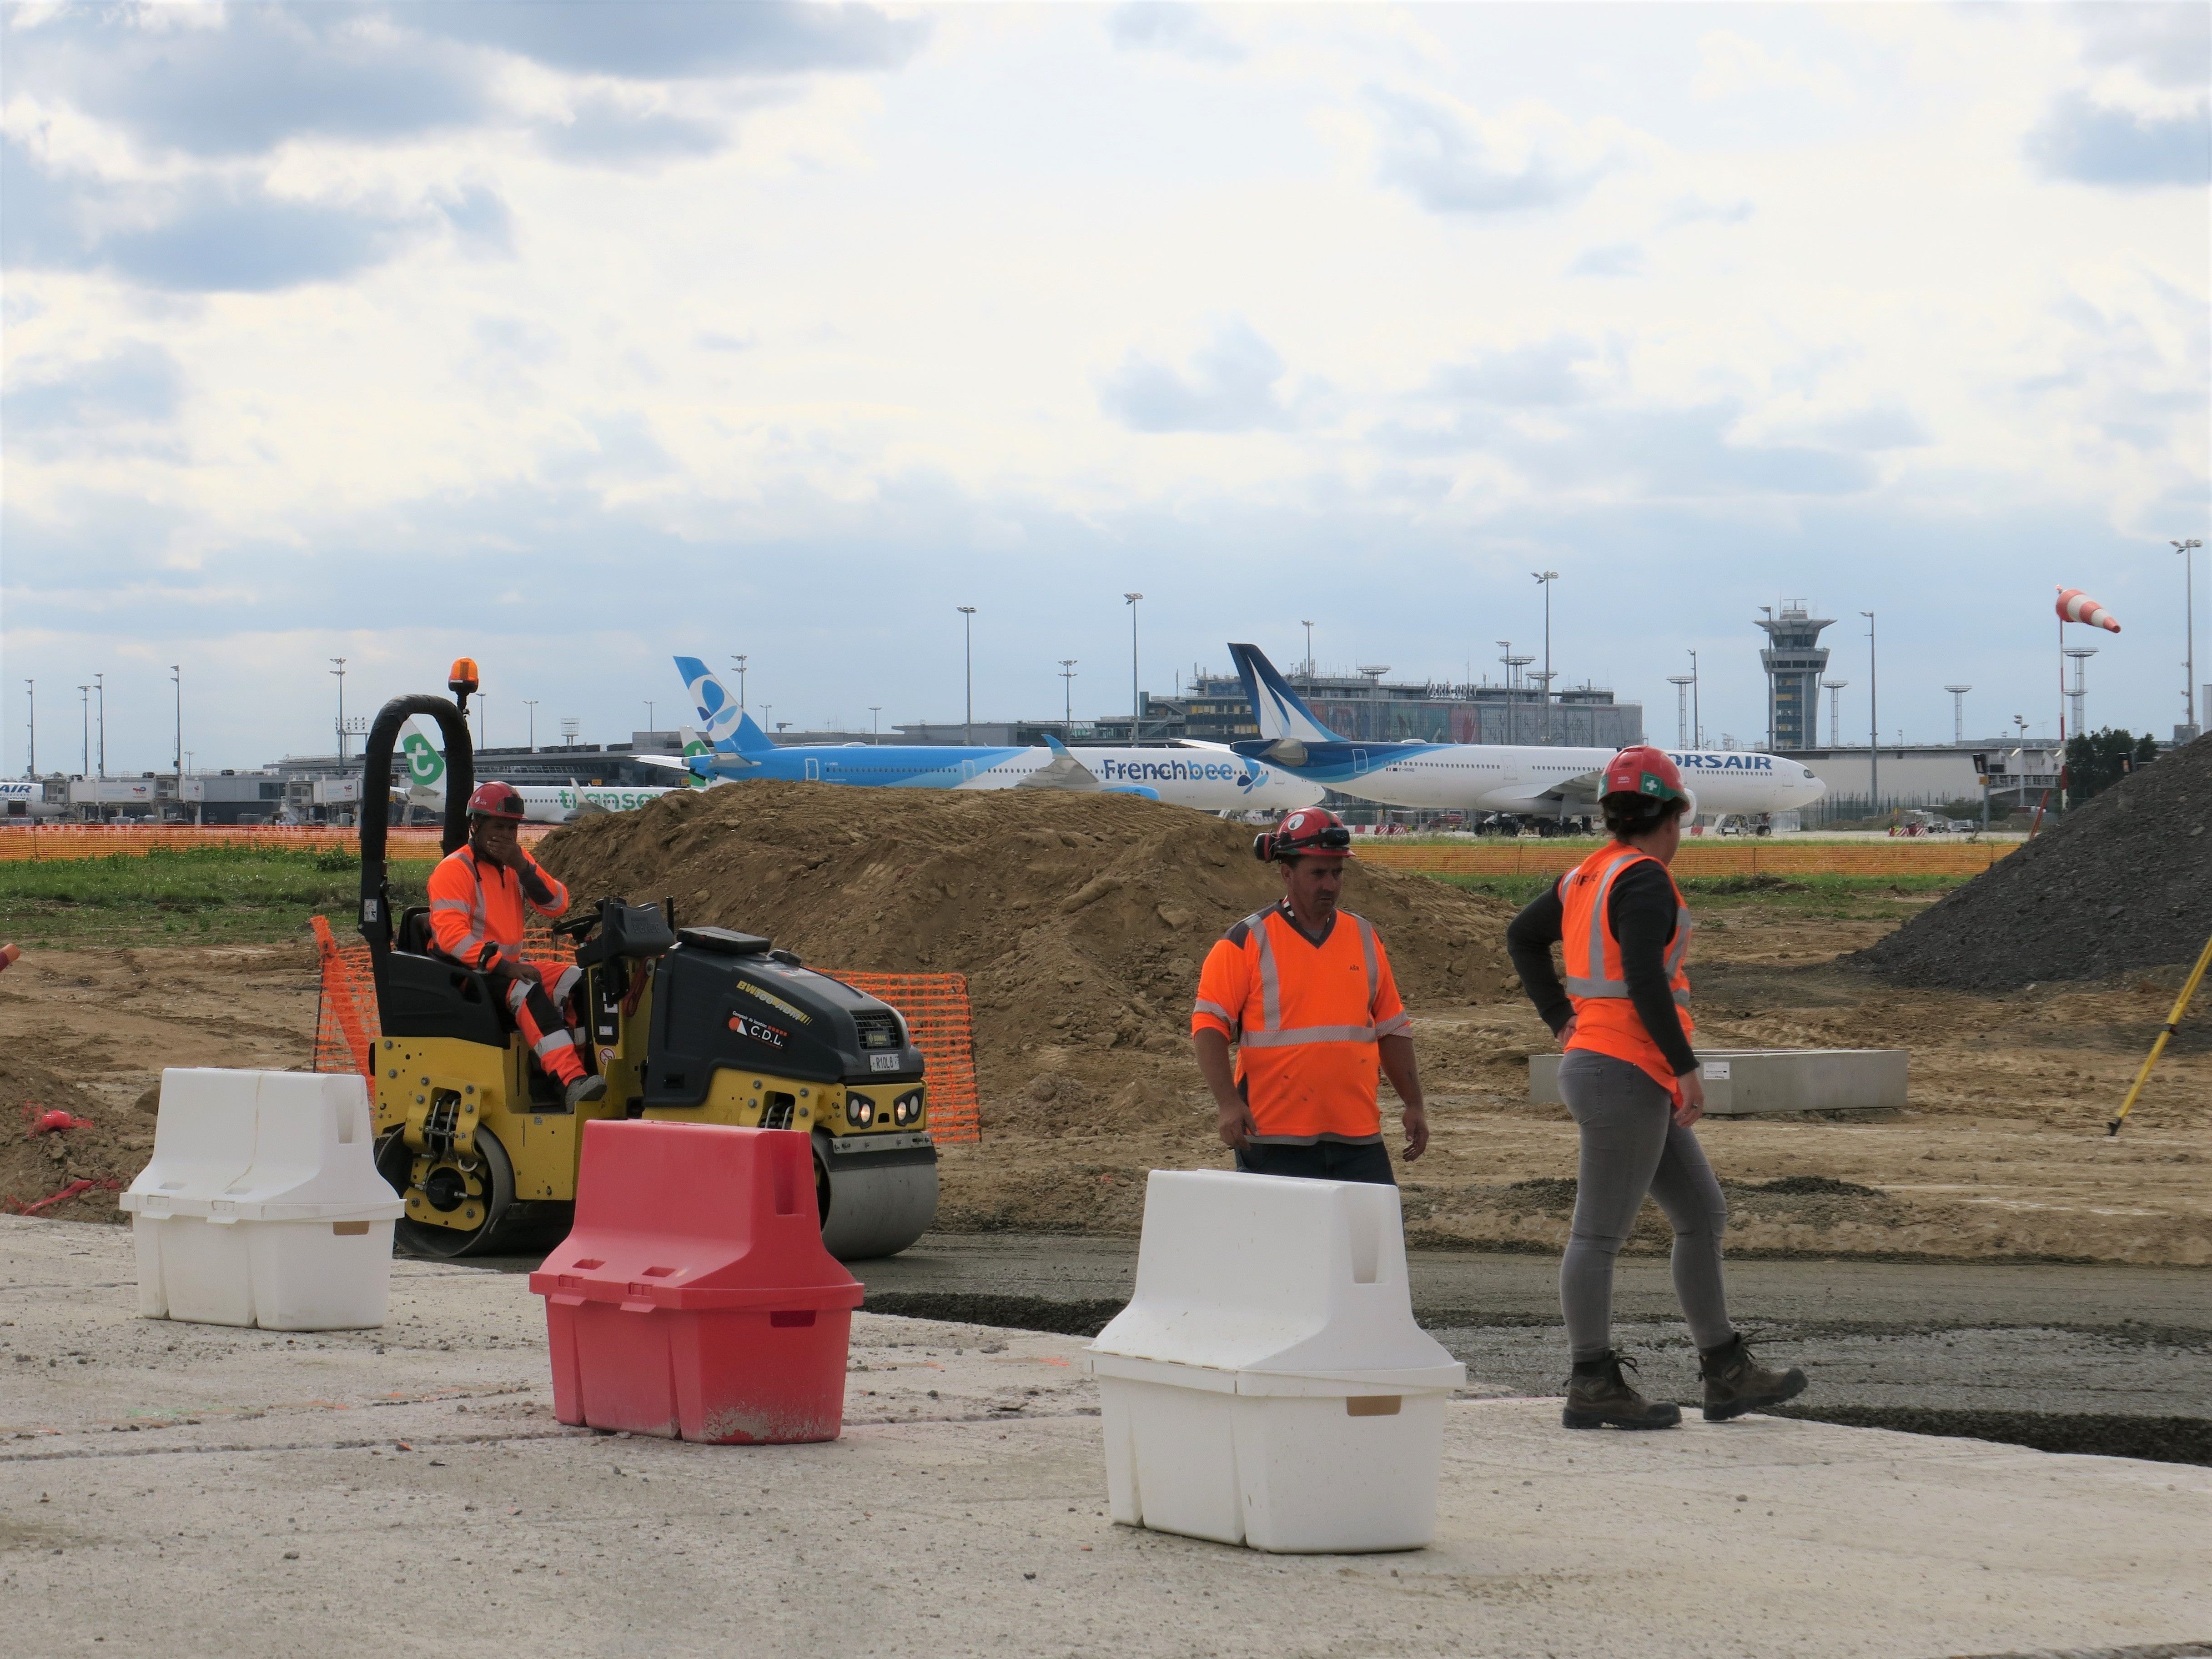 Aéroport d'Orly, le 20 septembre. La piste 02/20, réservée aux procédures d'urgence, est fermée à la navigation aérienne jusqu'en juillet 2024 pour être rénovée. LP/Marine Legrand